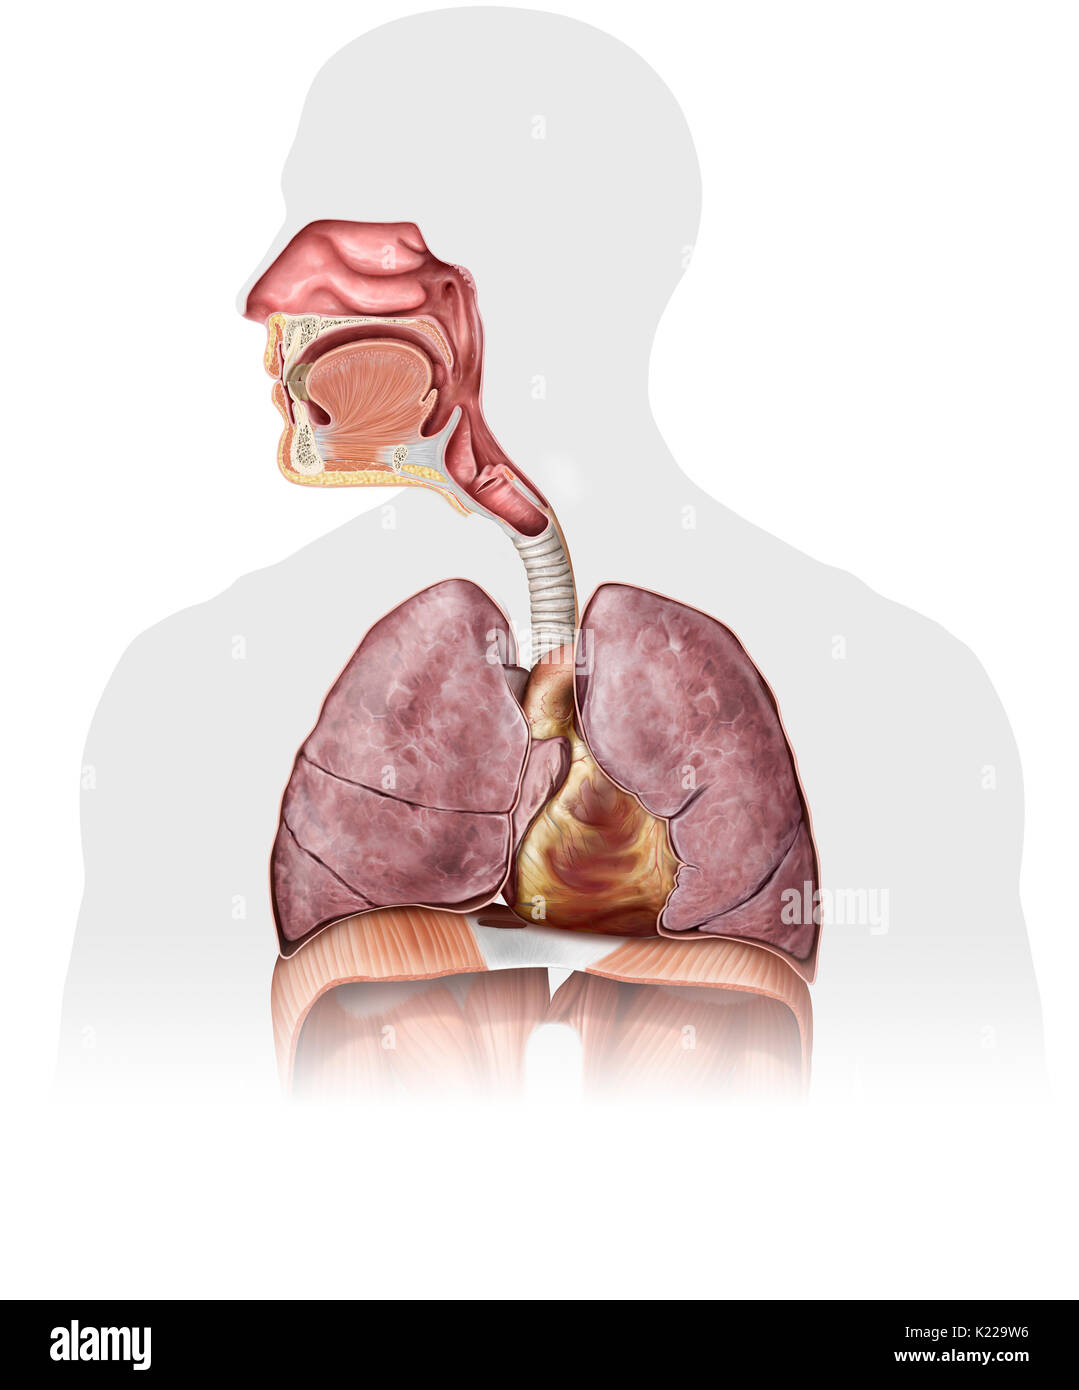 Esta imagen muestra la cavidad nasal, la epiglotis, la boca, la faringe, la laringe, la tráquea, el corazón, los pulmones, la tráquea y el pulmón. Foto de stock